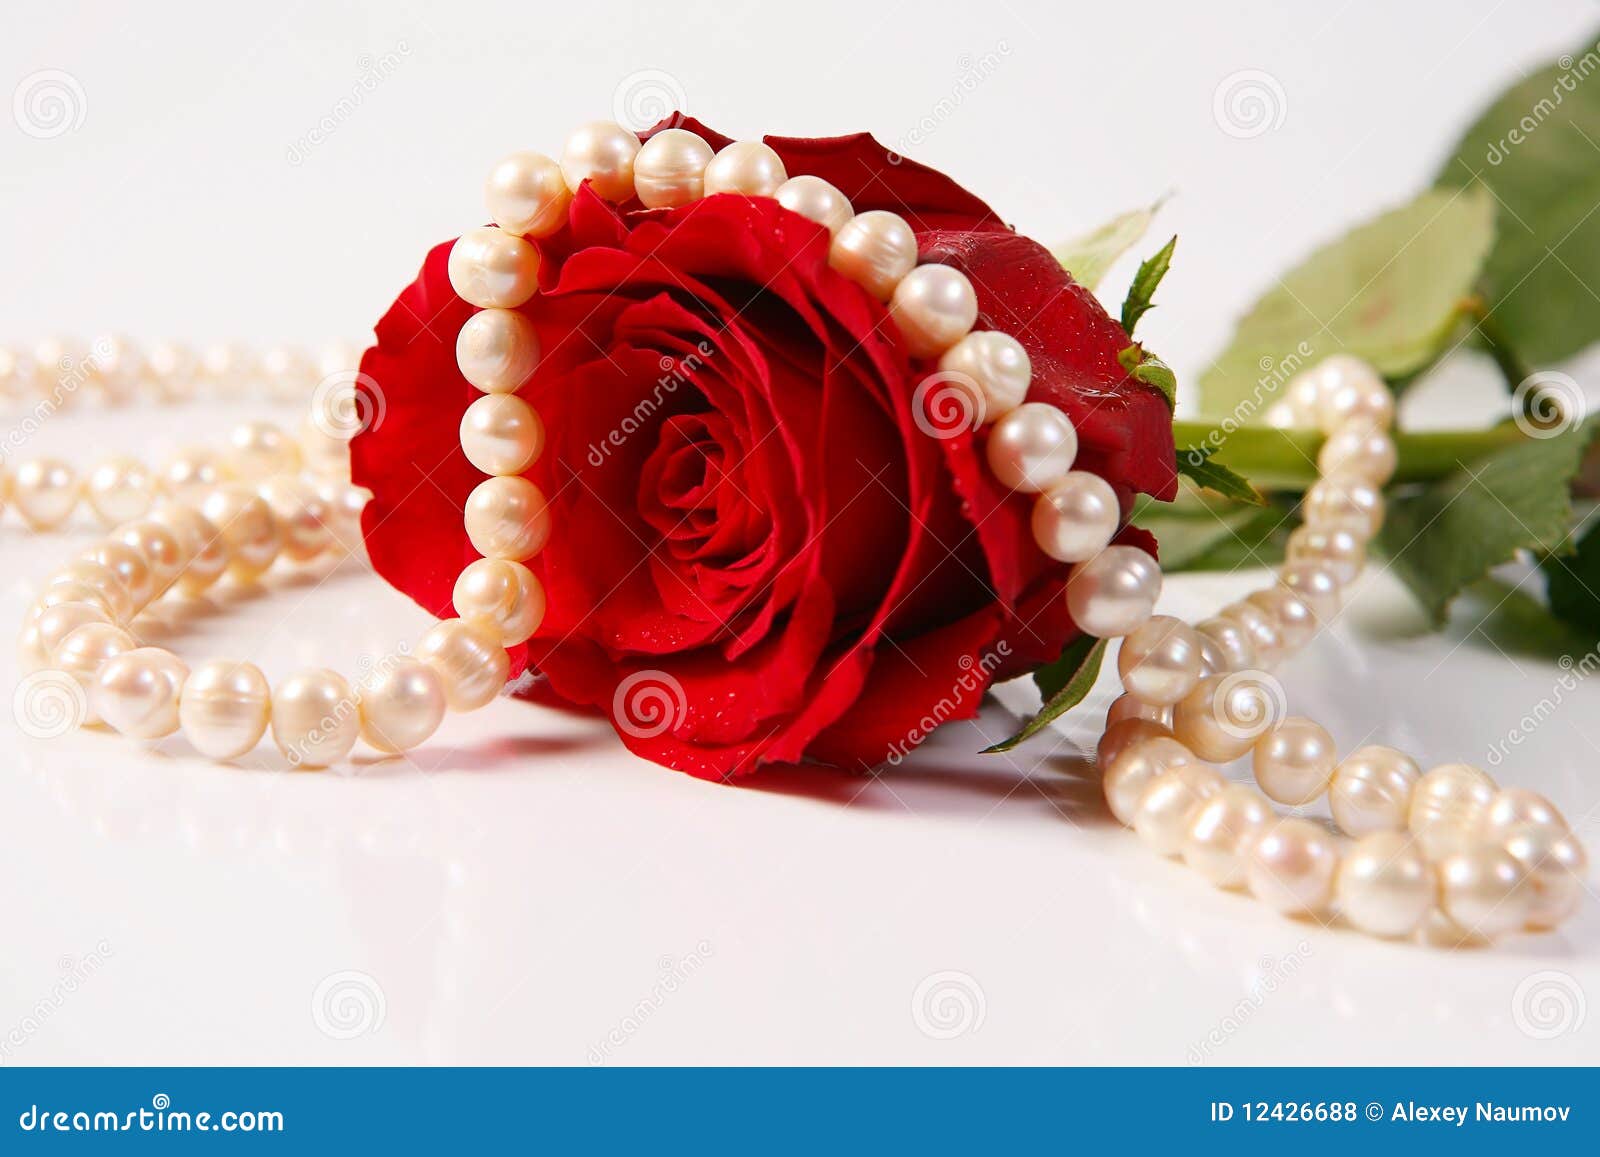 rose & pearls